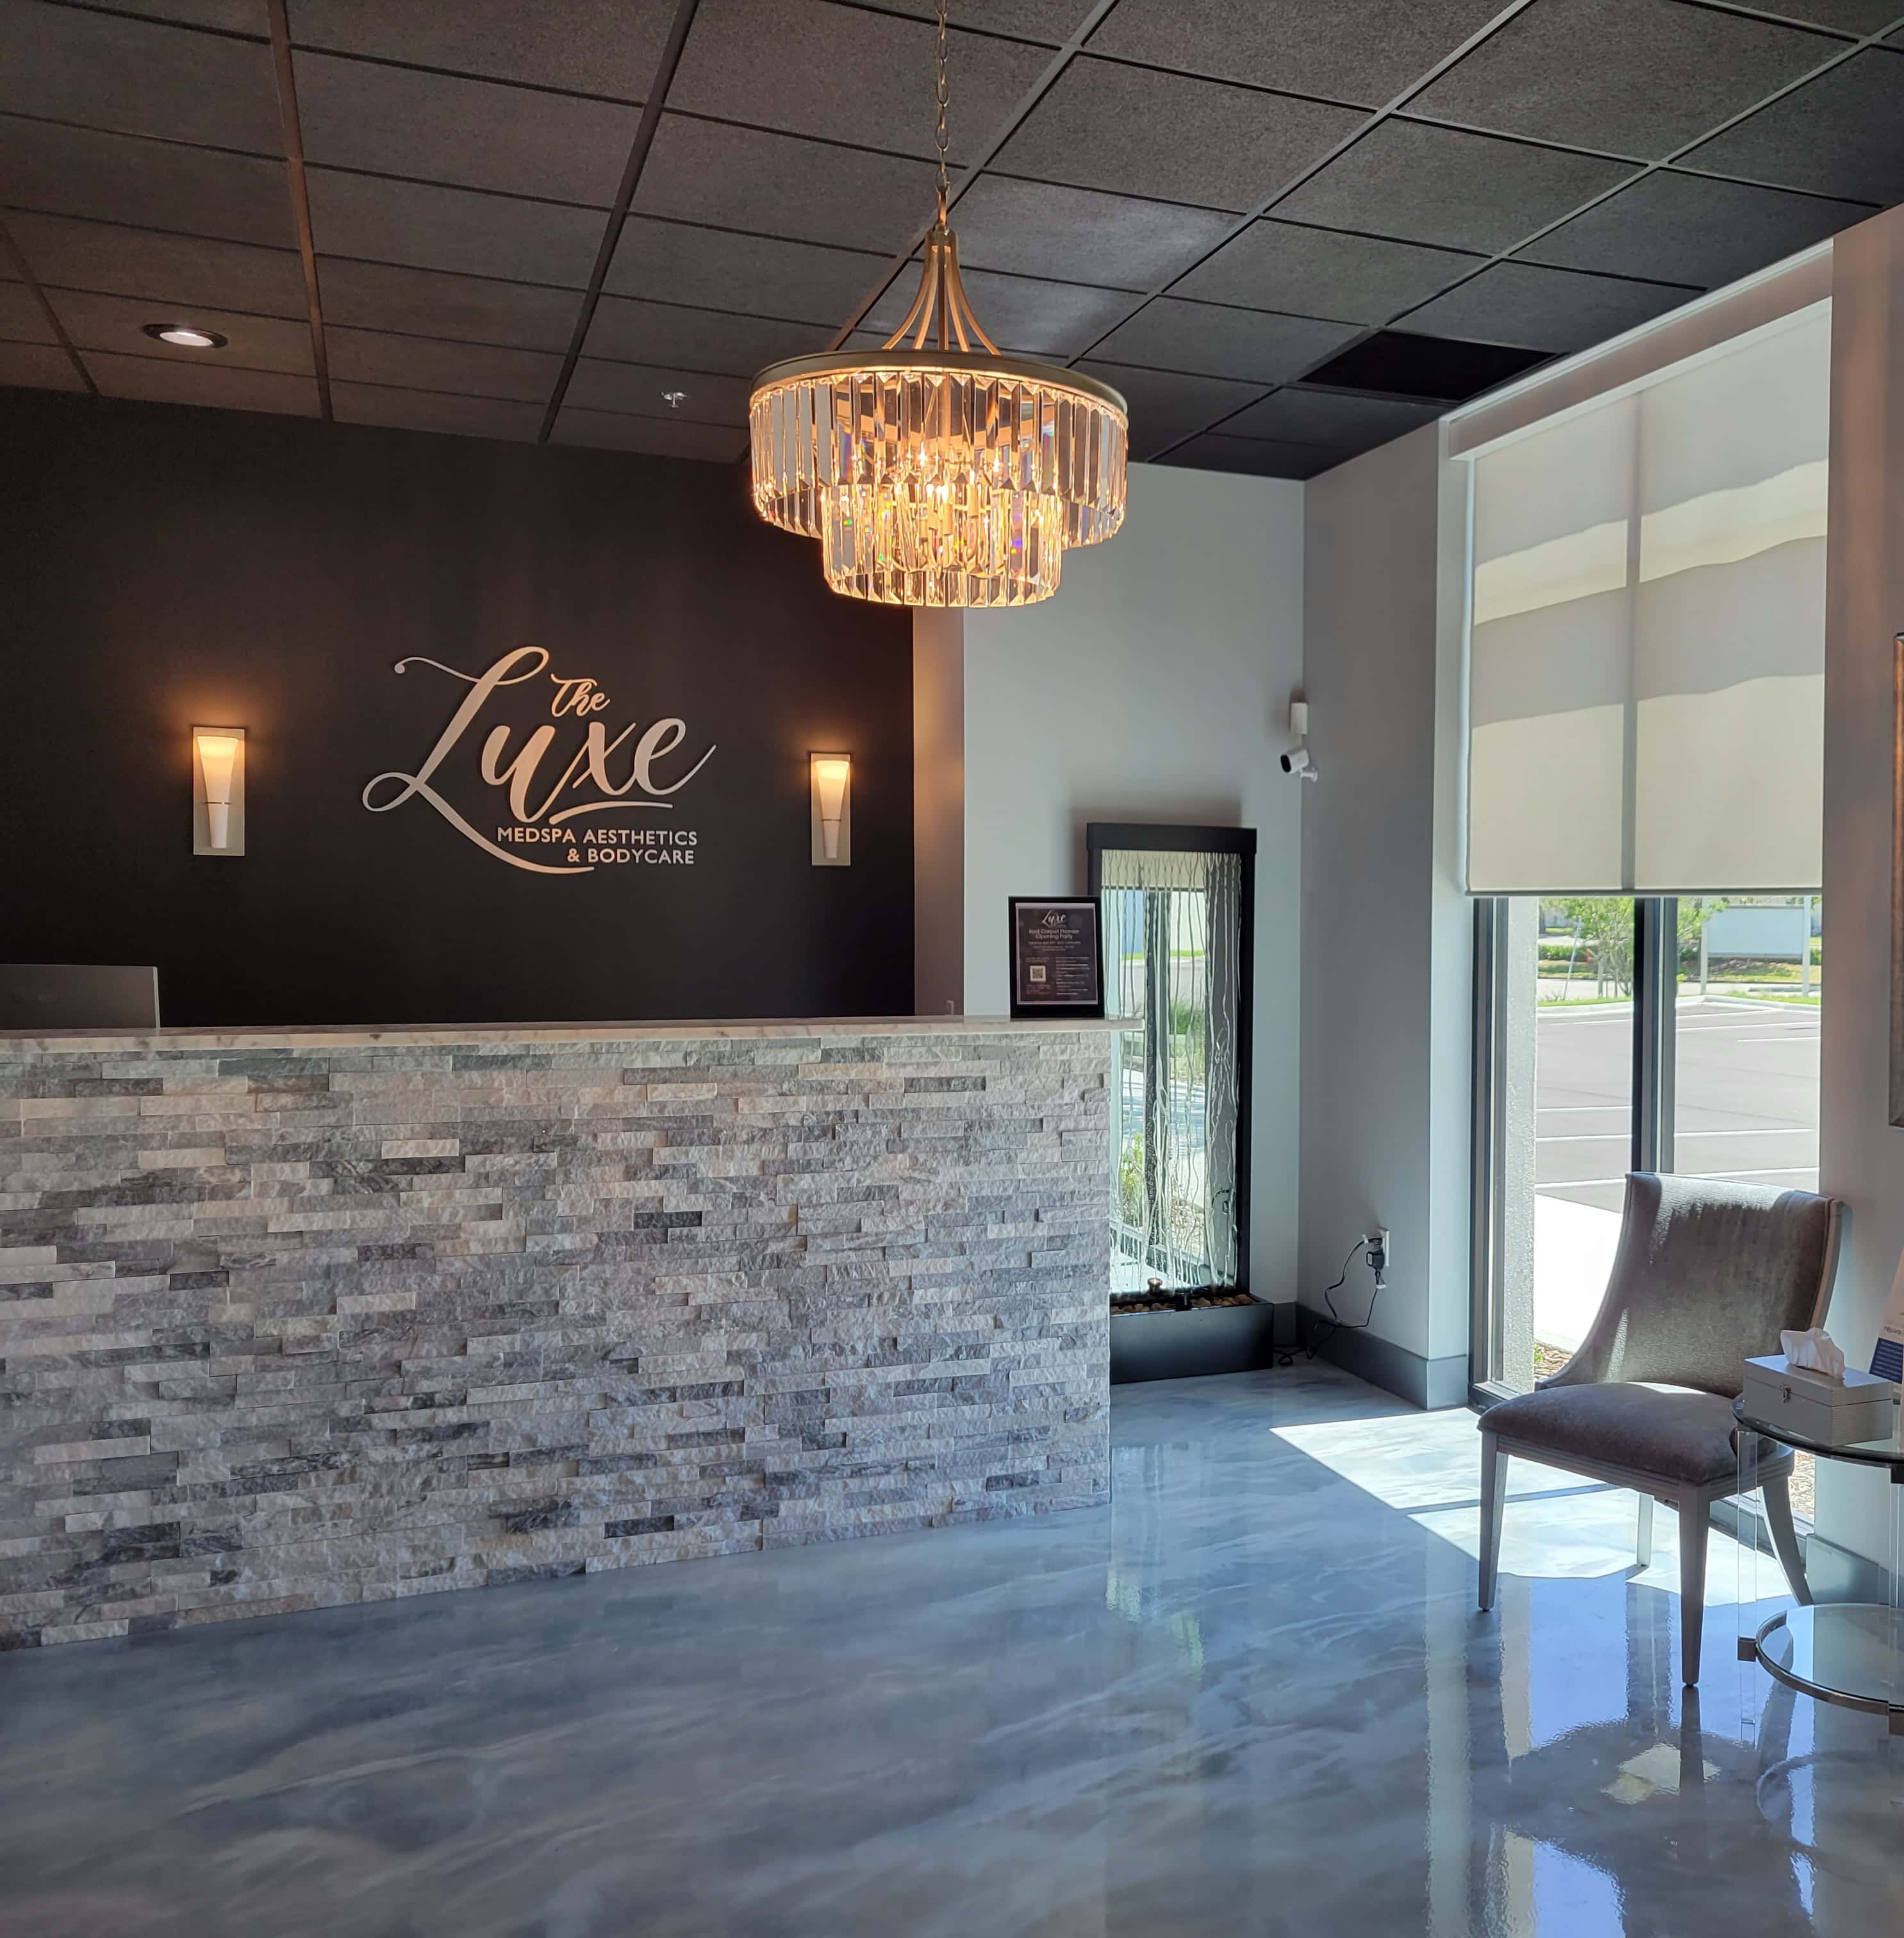 The Luxe Medspa Aesthetics & Bodycare - Jacksonville, FL, US, boto x
